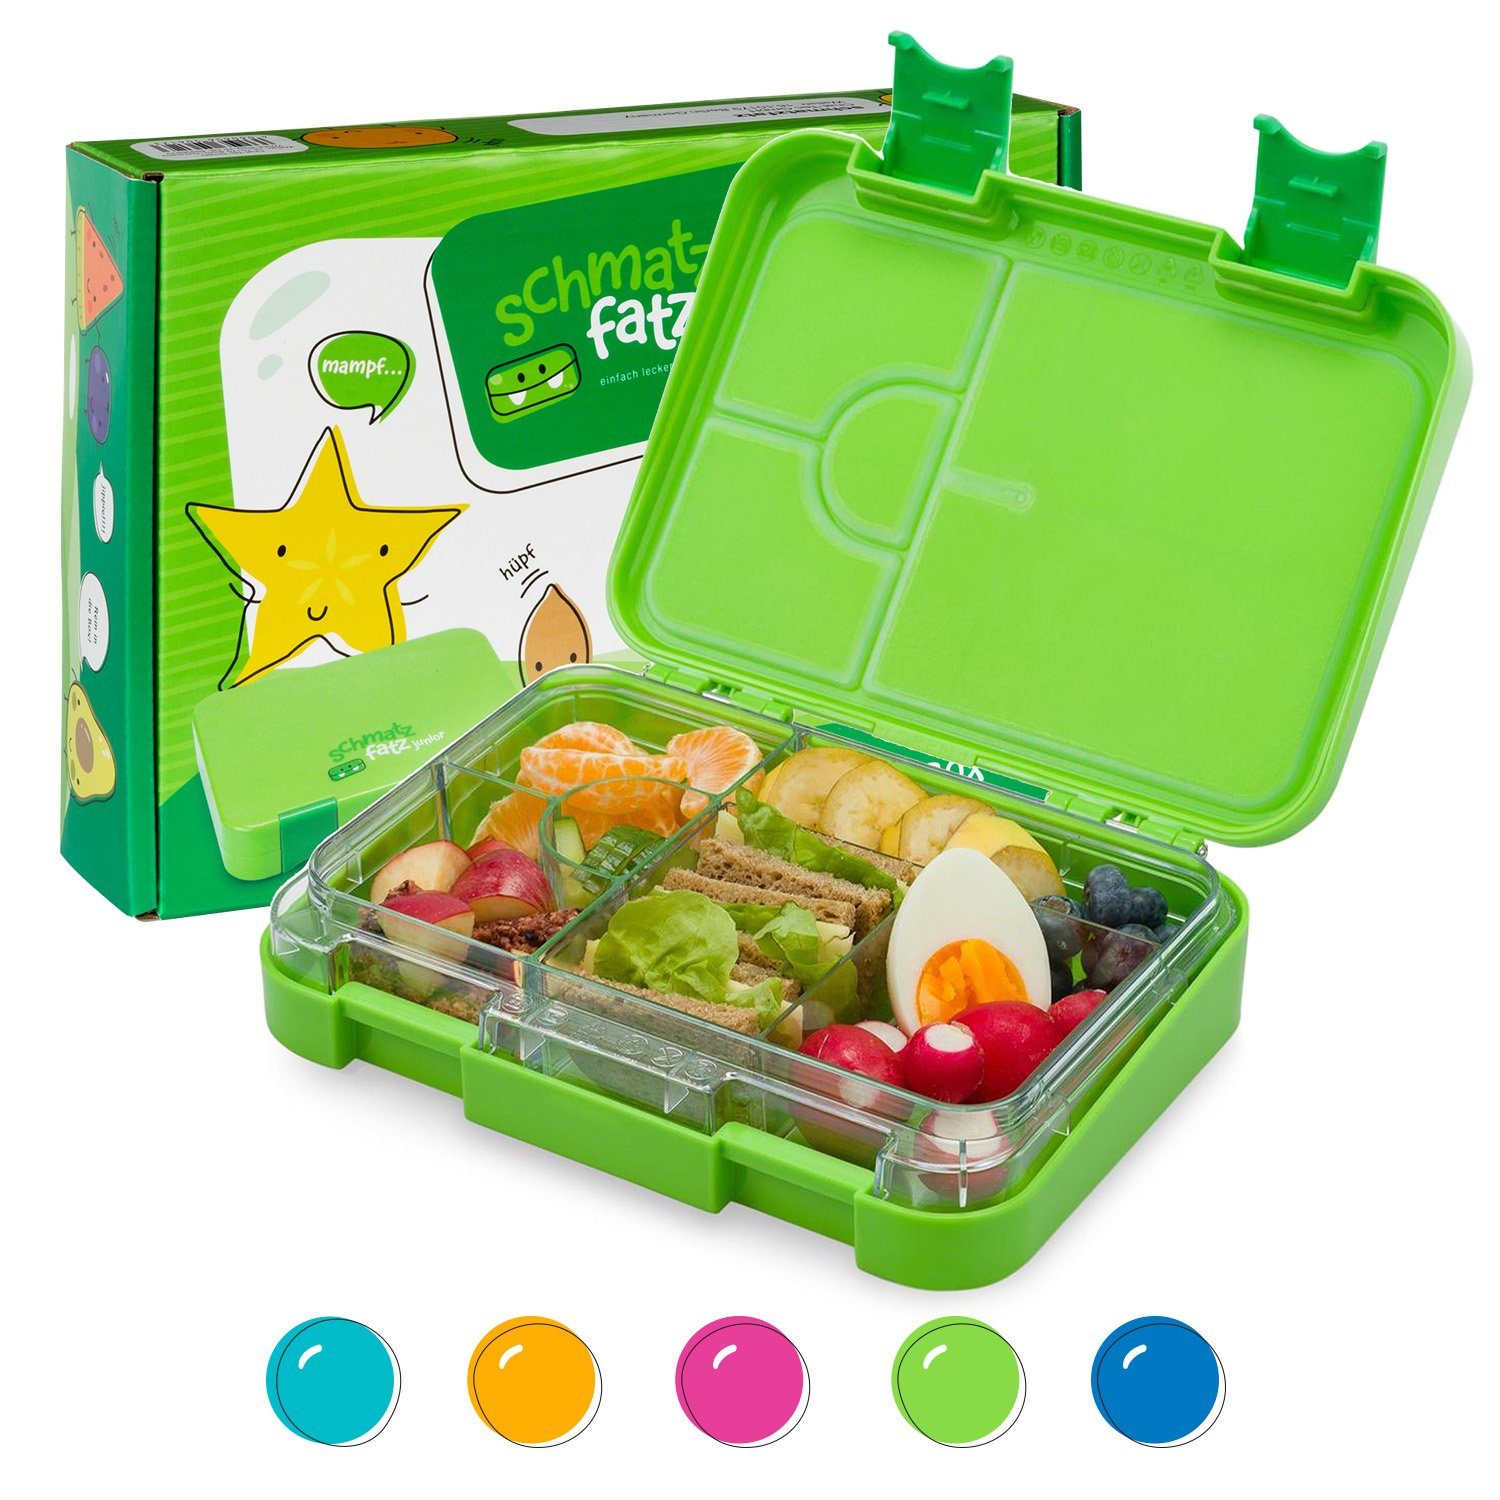 Lunchbox, Klarstein Kunststoff schmatzfatz Grün junior Frischhaltedose